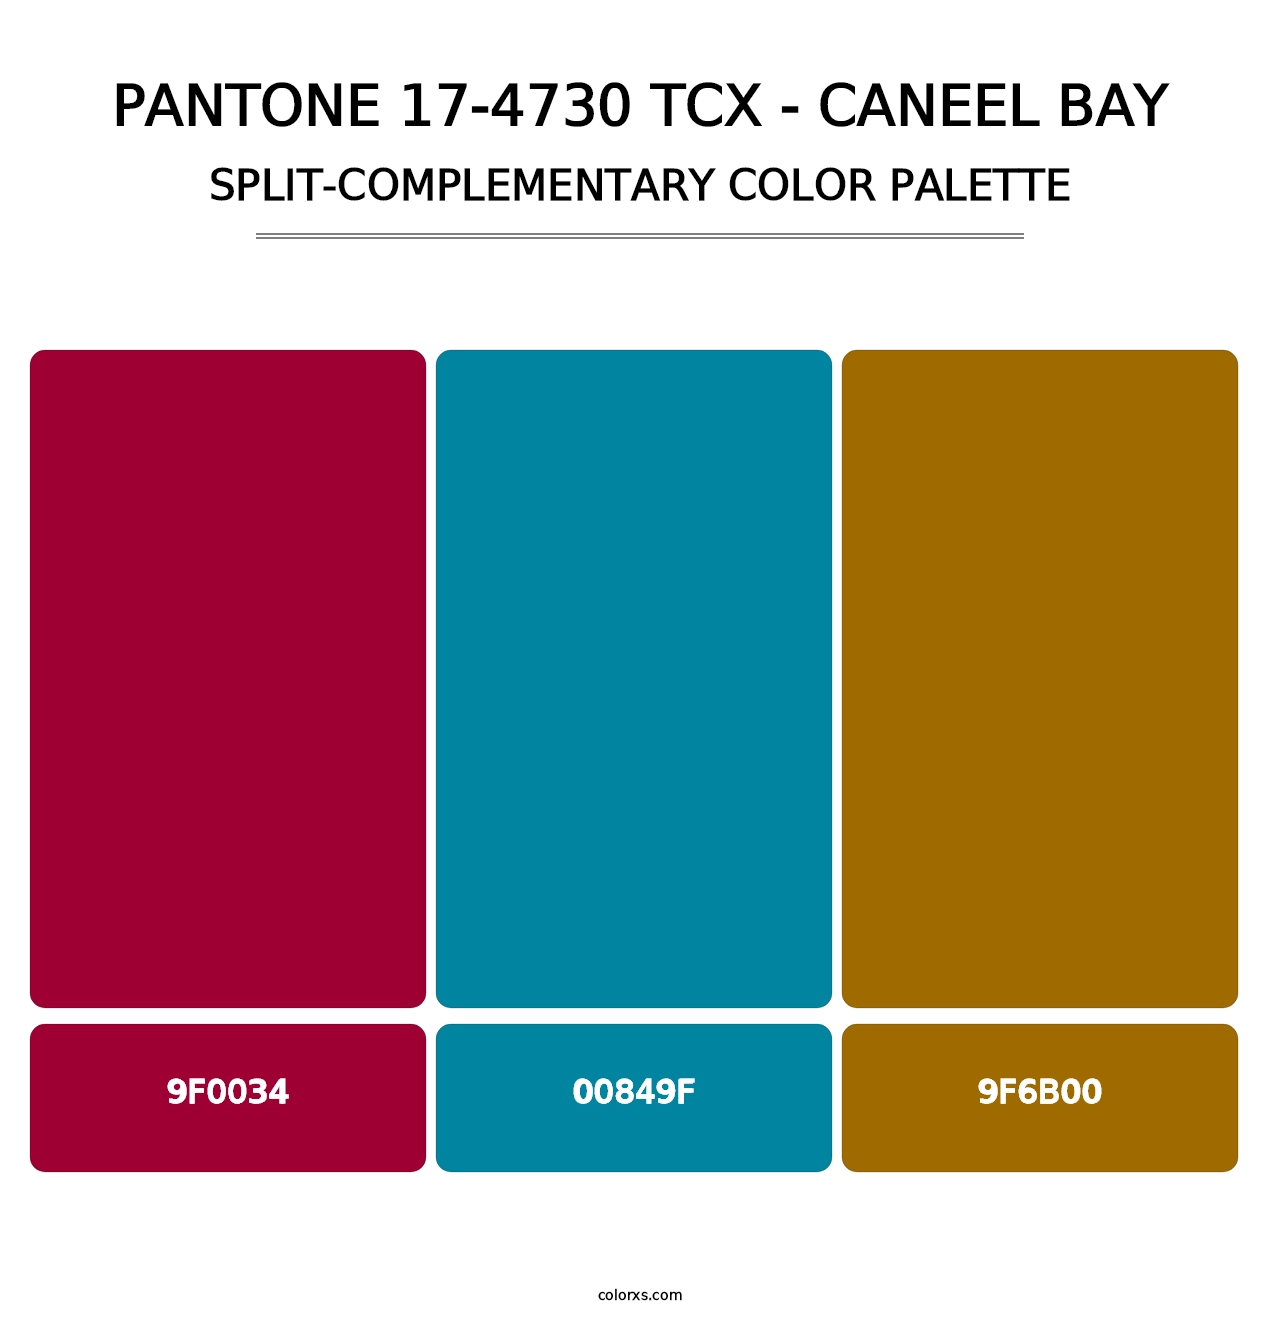 PANTONE 17-4730 TCX - Caneel Bay - Split-Complementary Color Palette